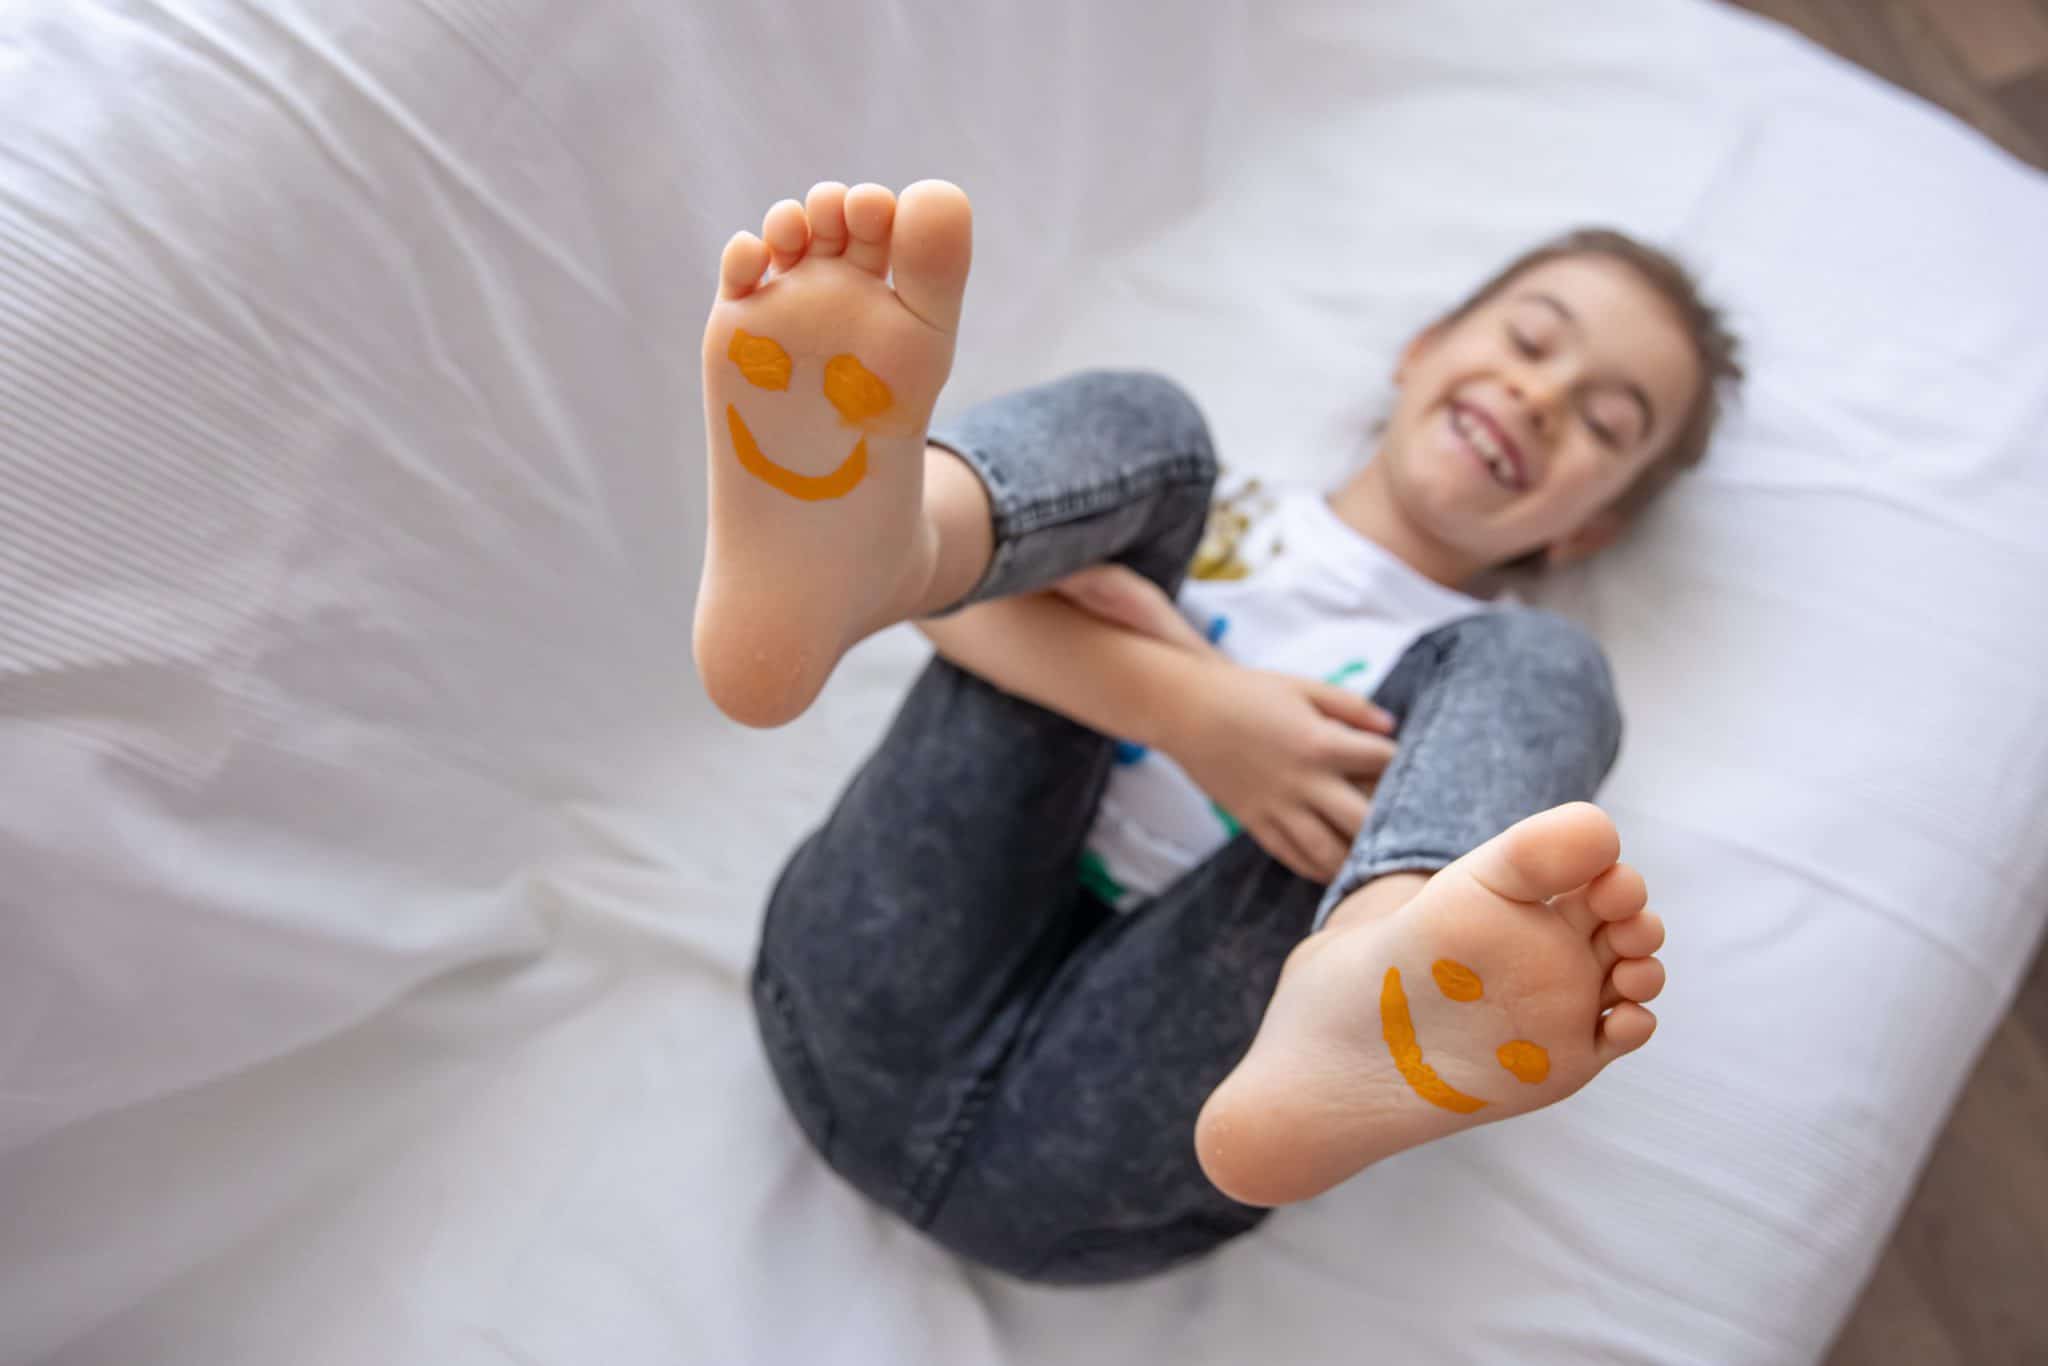 funny-smiles-children's-feet